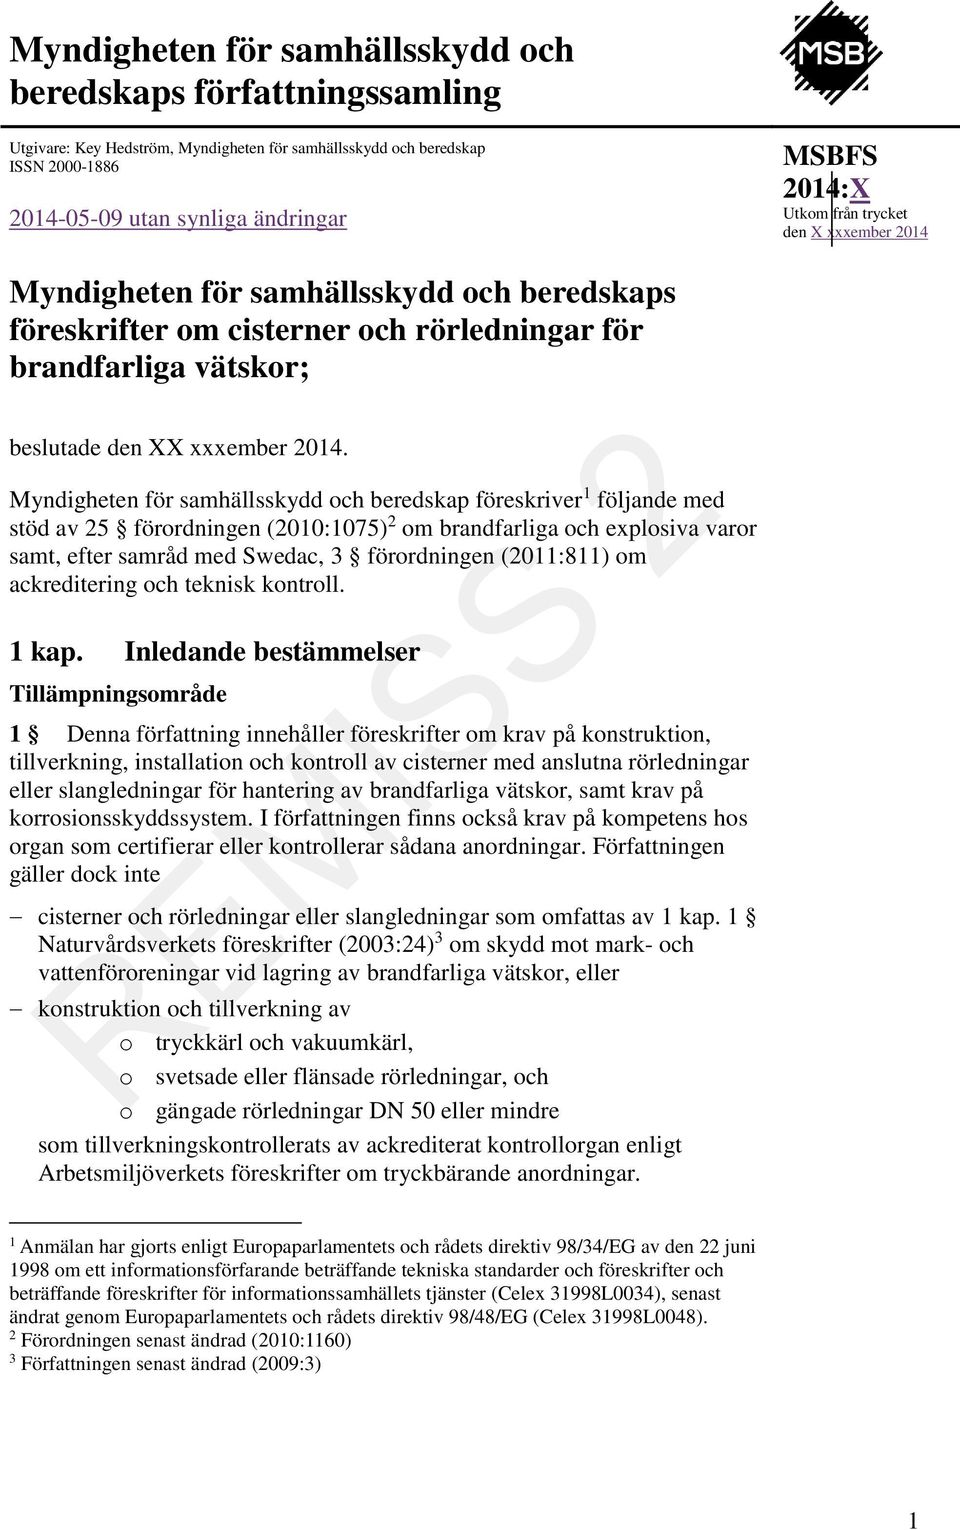 Myndigheten för samhällsskydd och beredskap föreskriver 1 följande med stöd av 25 förordningen (2010:1075) 2 om brandfarliga och explosiva varor samt, efter samråd med Swedac, 3 förordningen